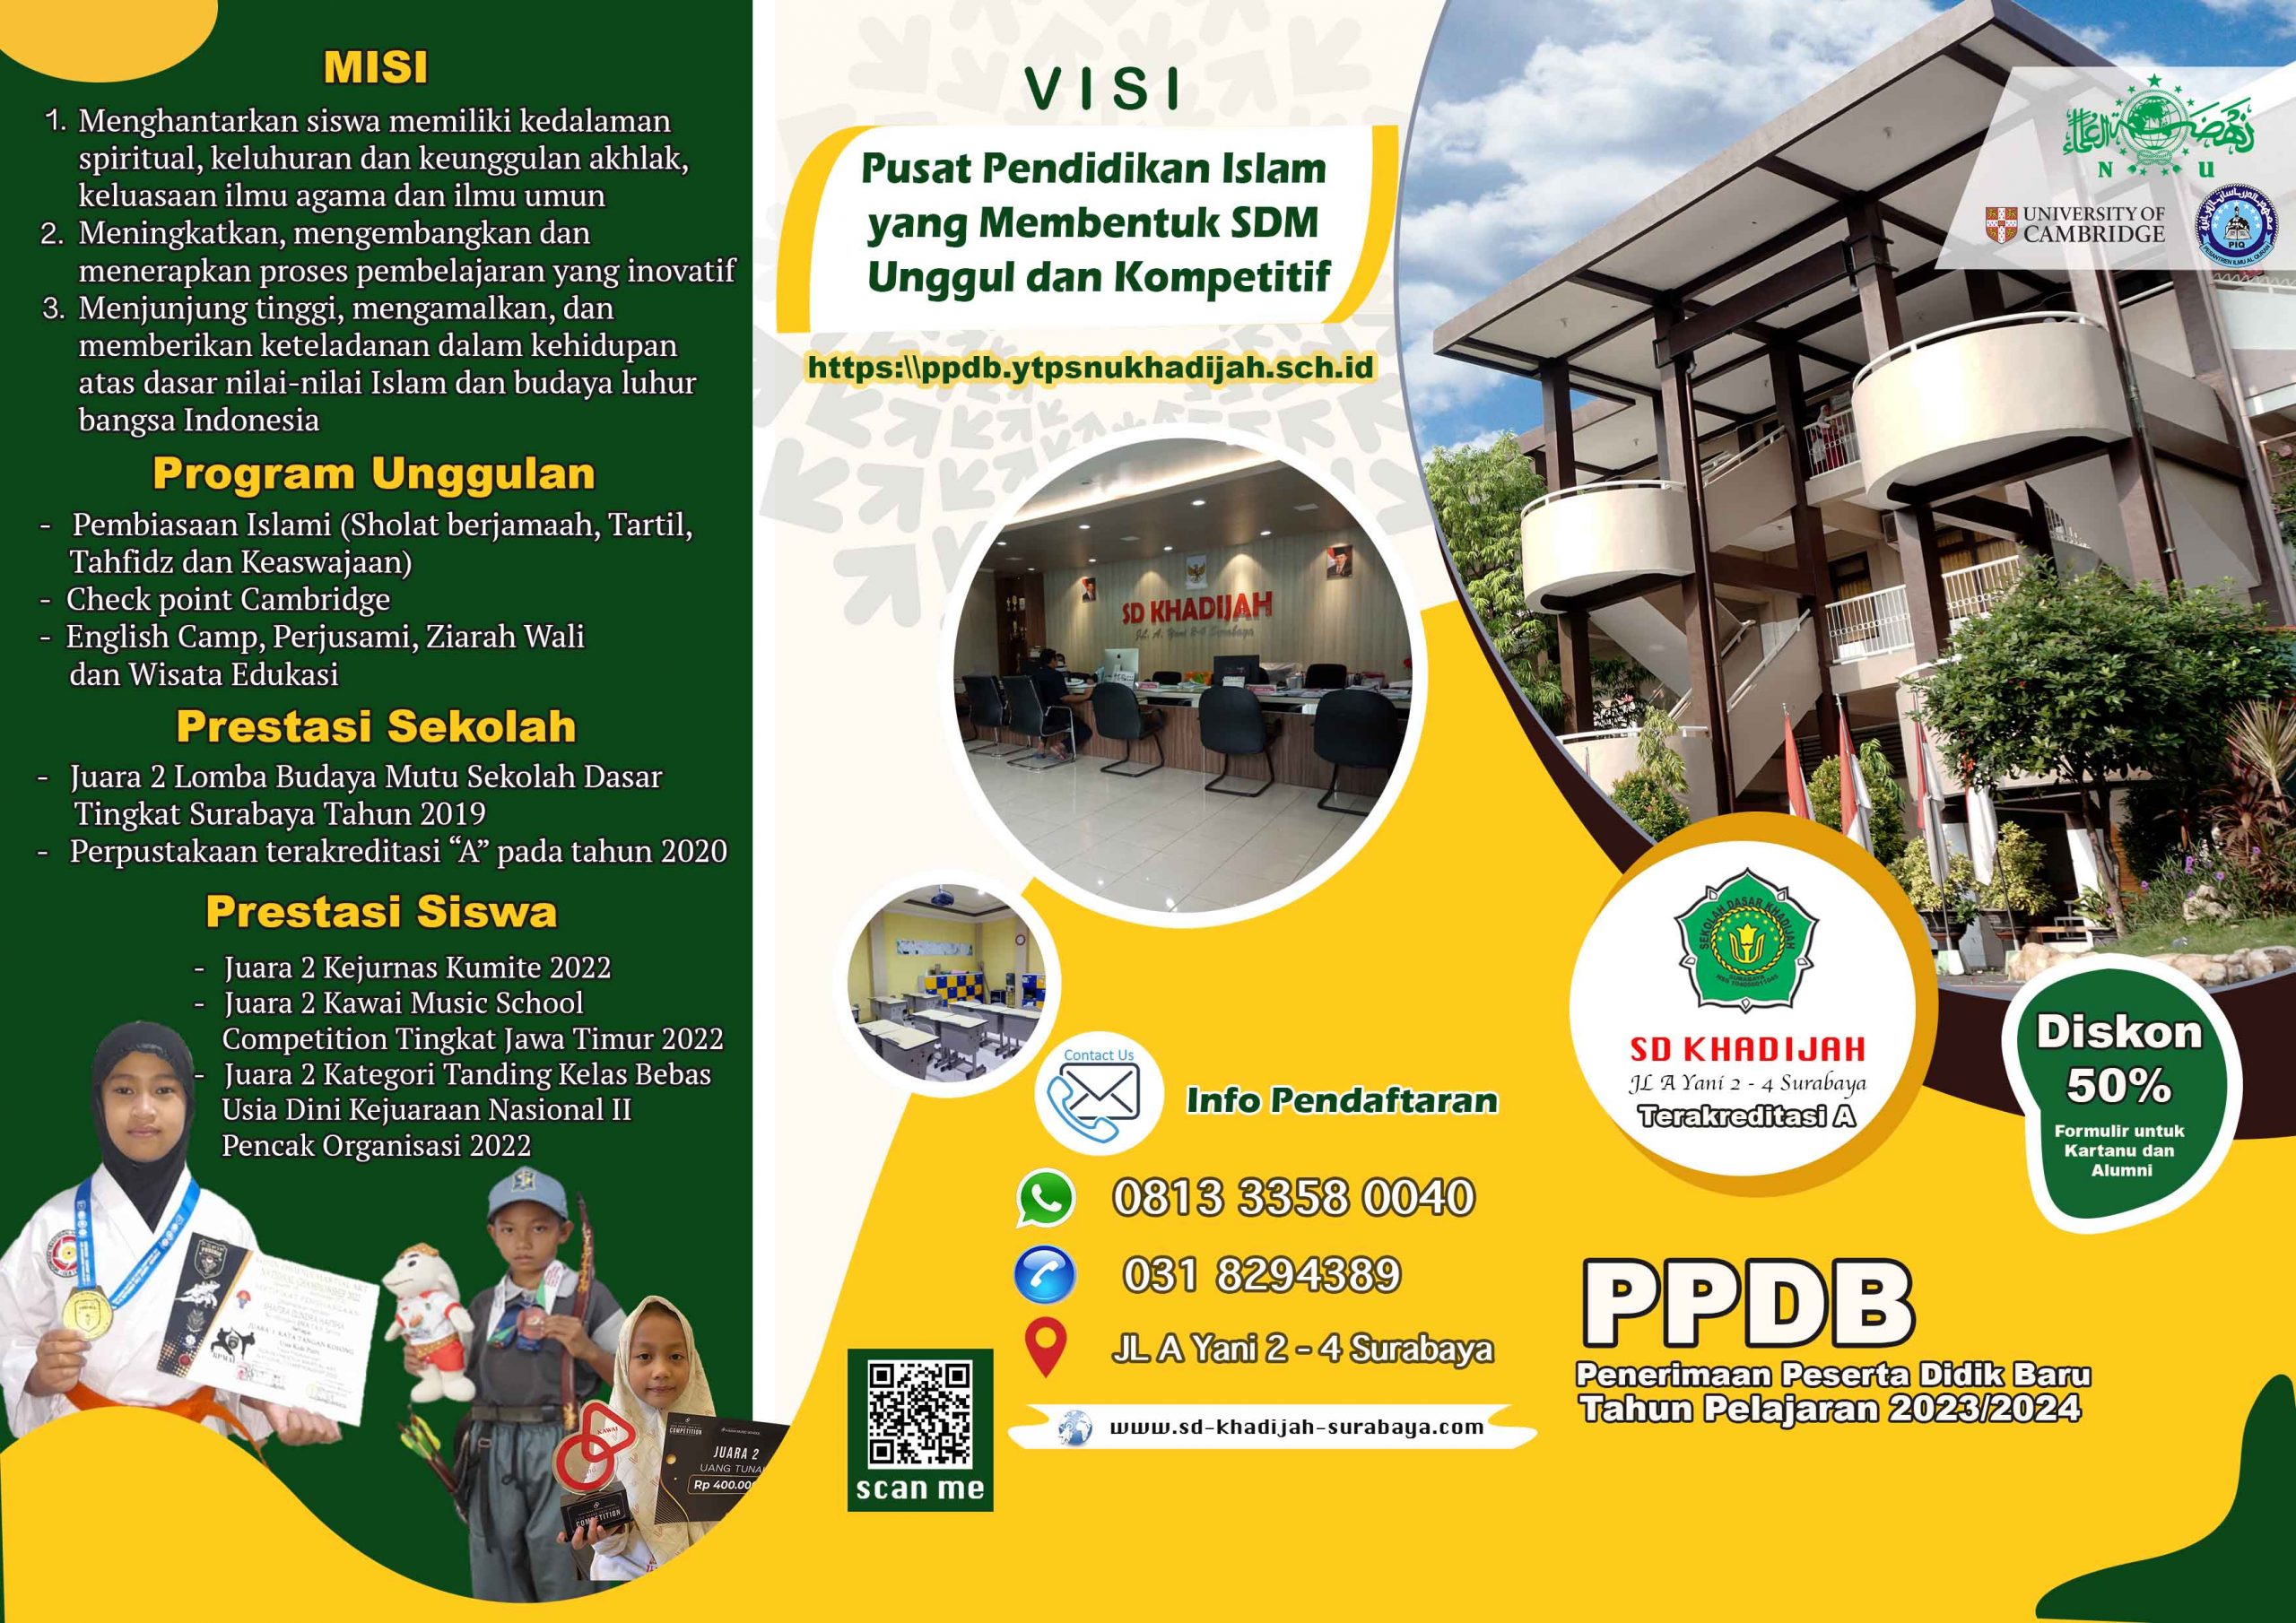 PPDB 2023/2024 DIBUKA SD Khadijah Surabaya